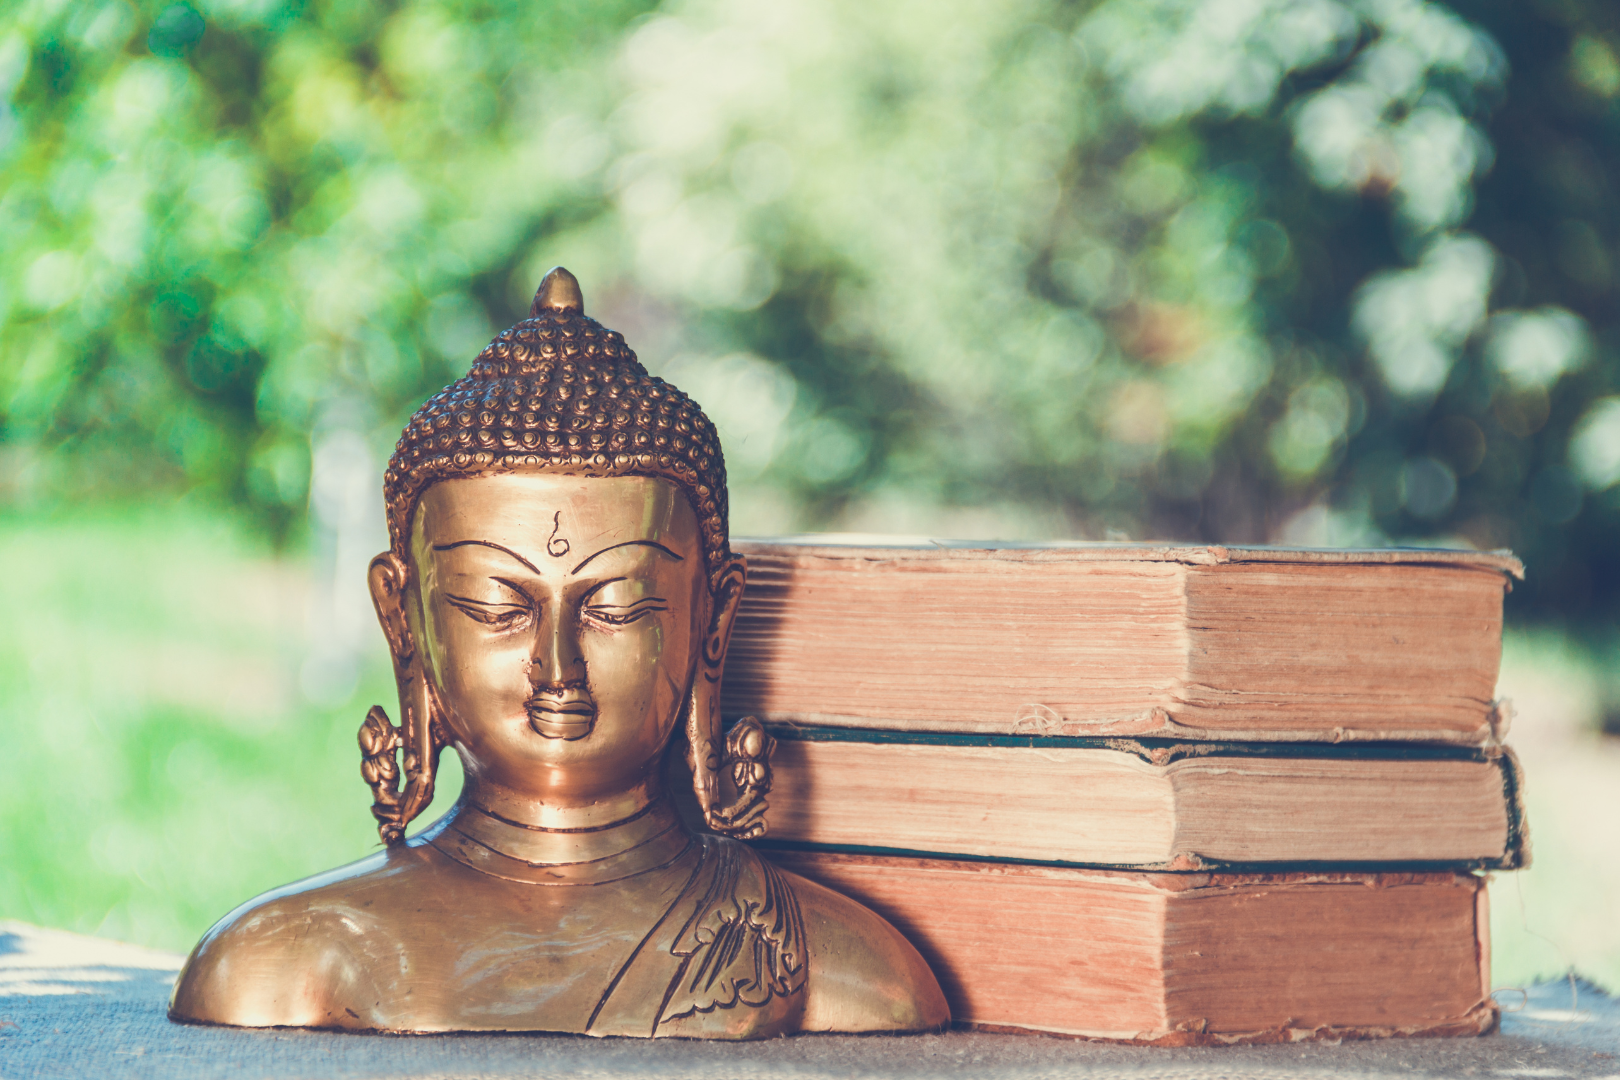 Hãy cùng chúng tôi bước vào thế giới của Đức Phật qua 5 cuốn sách này, và khám phá những bài học, triết lý sâu sắc mà chúng mang lại.